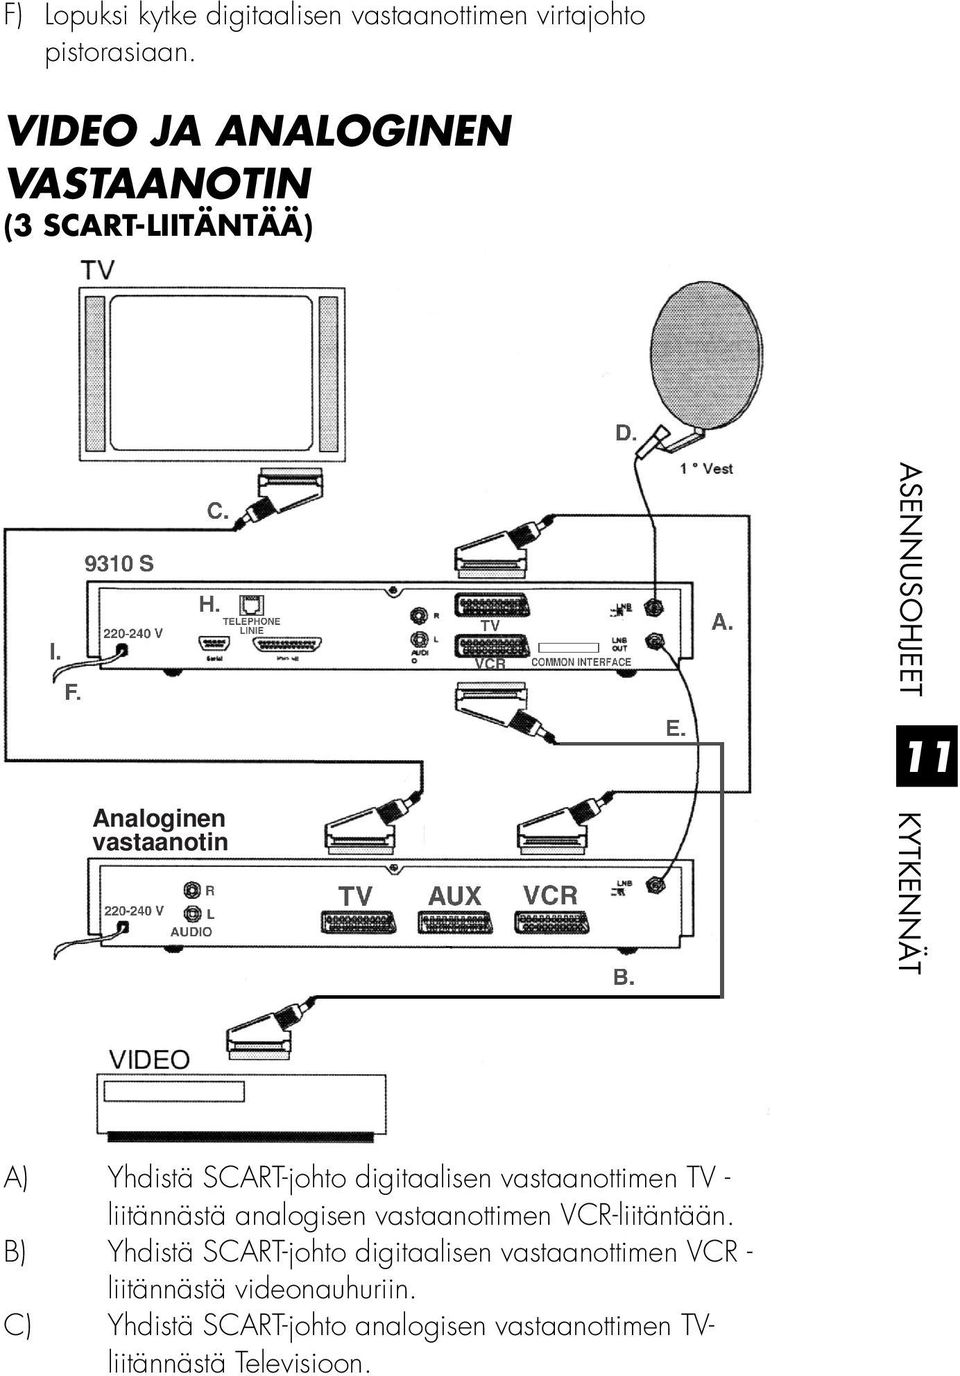 Yhdistä SCART-johto digitaalisen vastaanottimen TV - liitännästä analogisen vastaanottimen VCR-liitäntään.